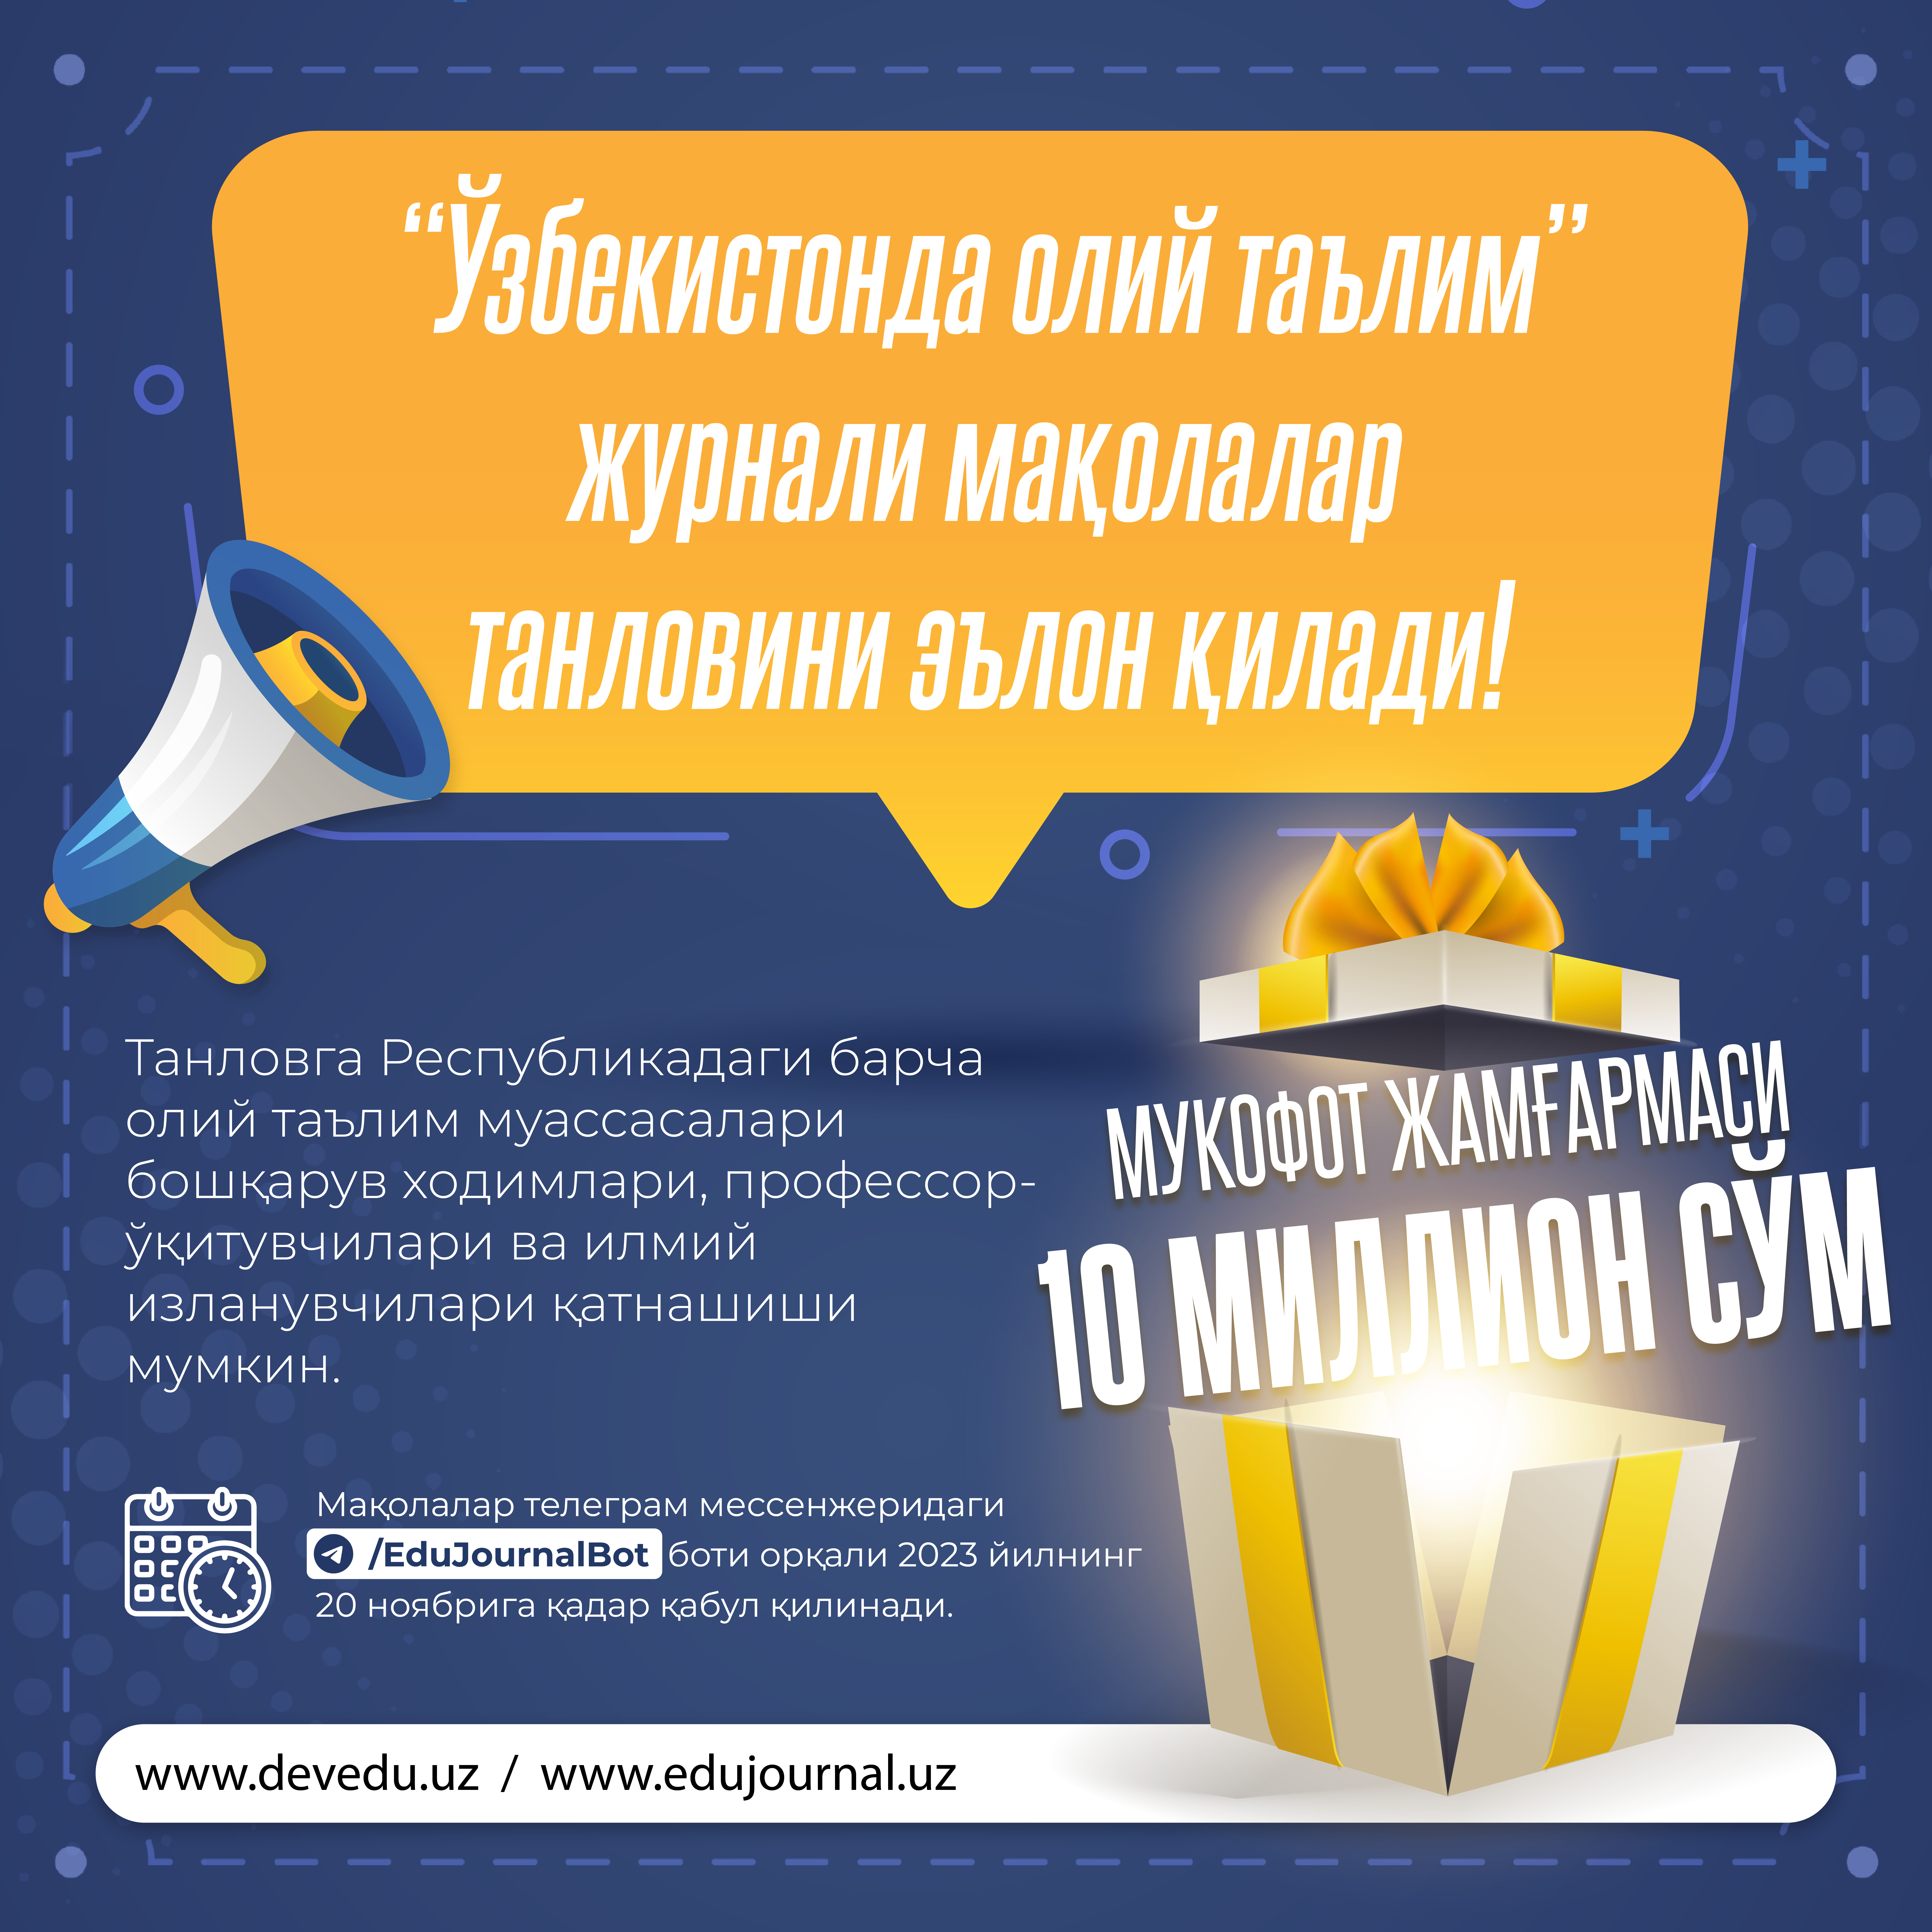 Журнал “Высшее образование в Узбекистане” объявляет конкурс статей!